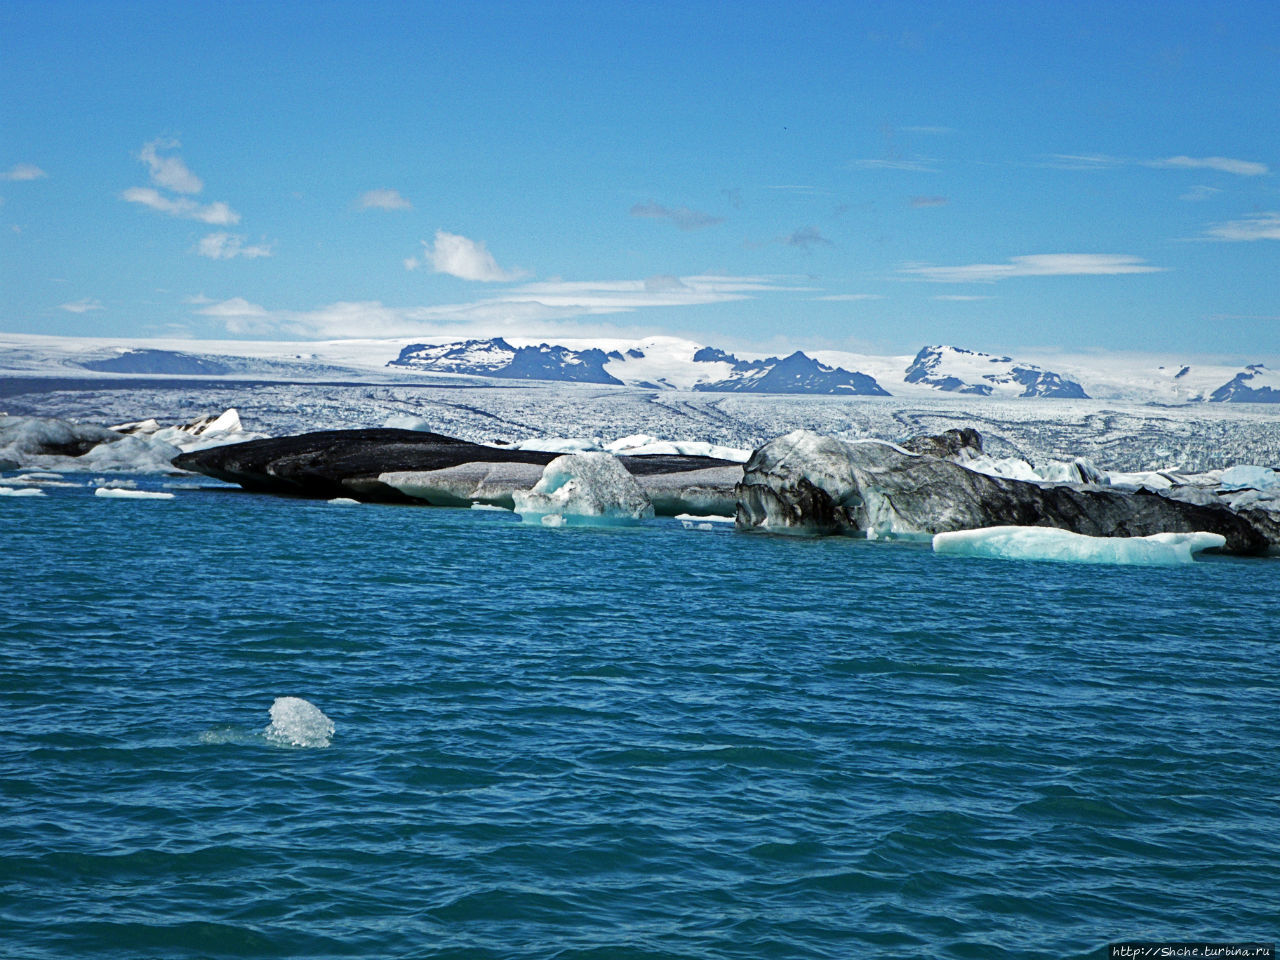 По лагуне причудливо-тающих льдов на плавающем авто-корабле Йёкюльсаурлоун ледниковая лагуна, Исландия